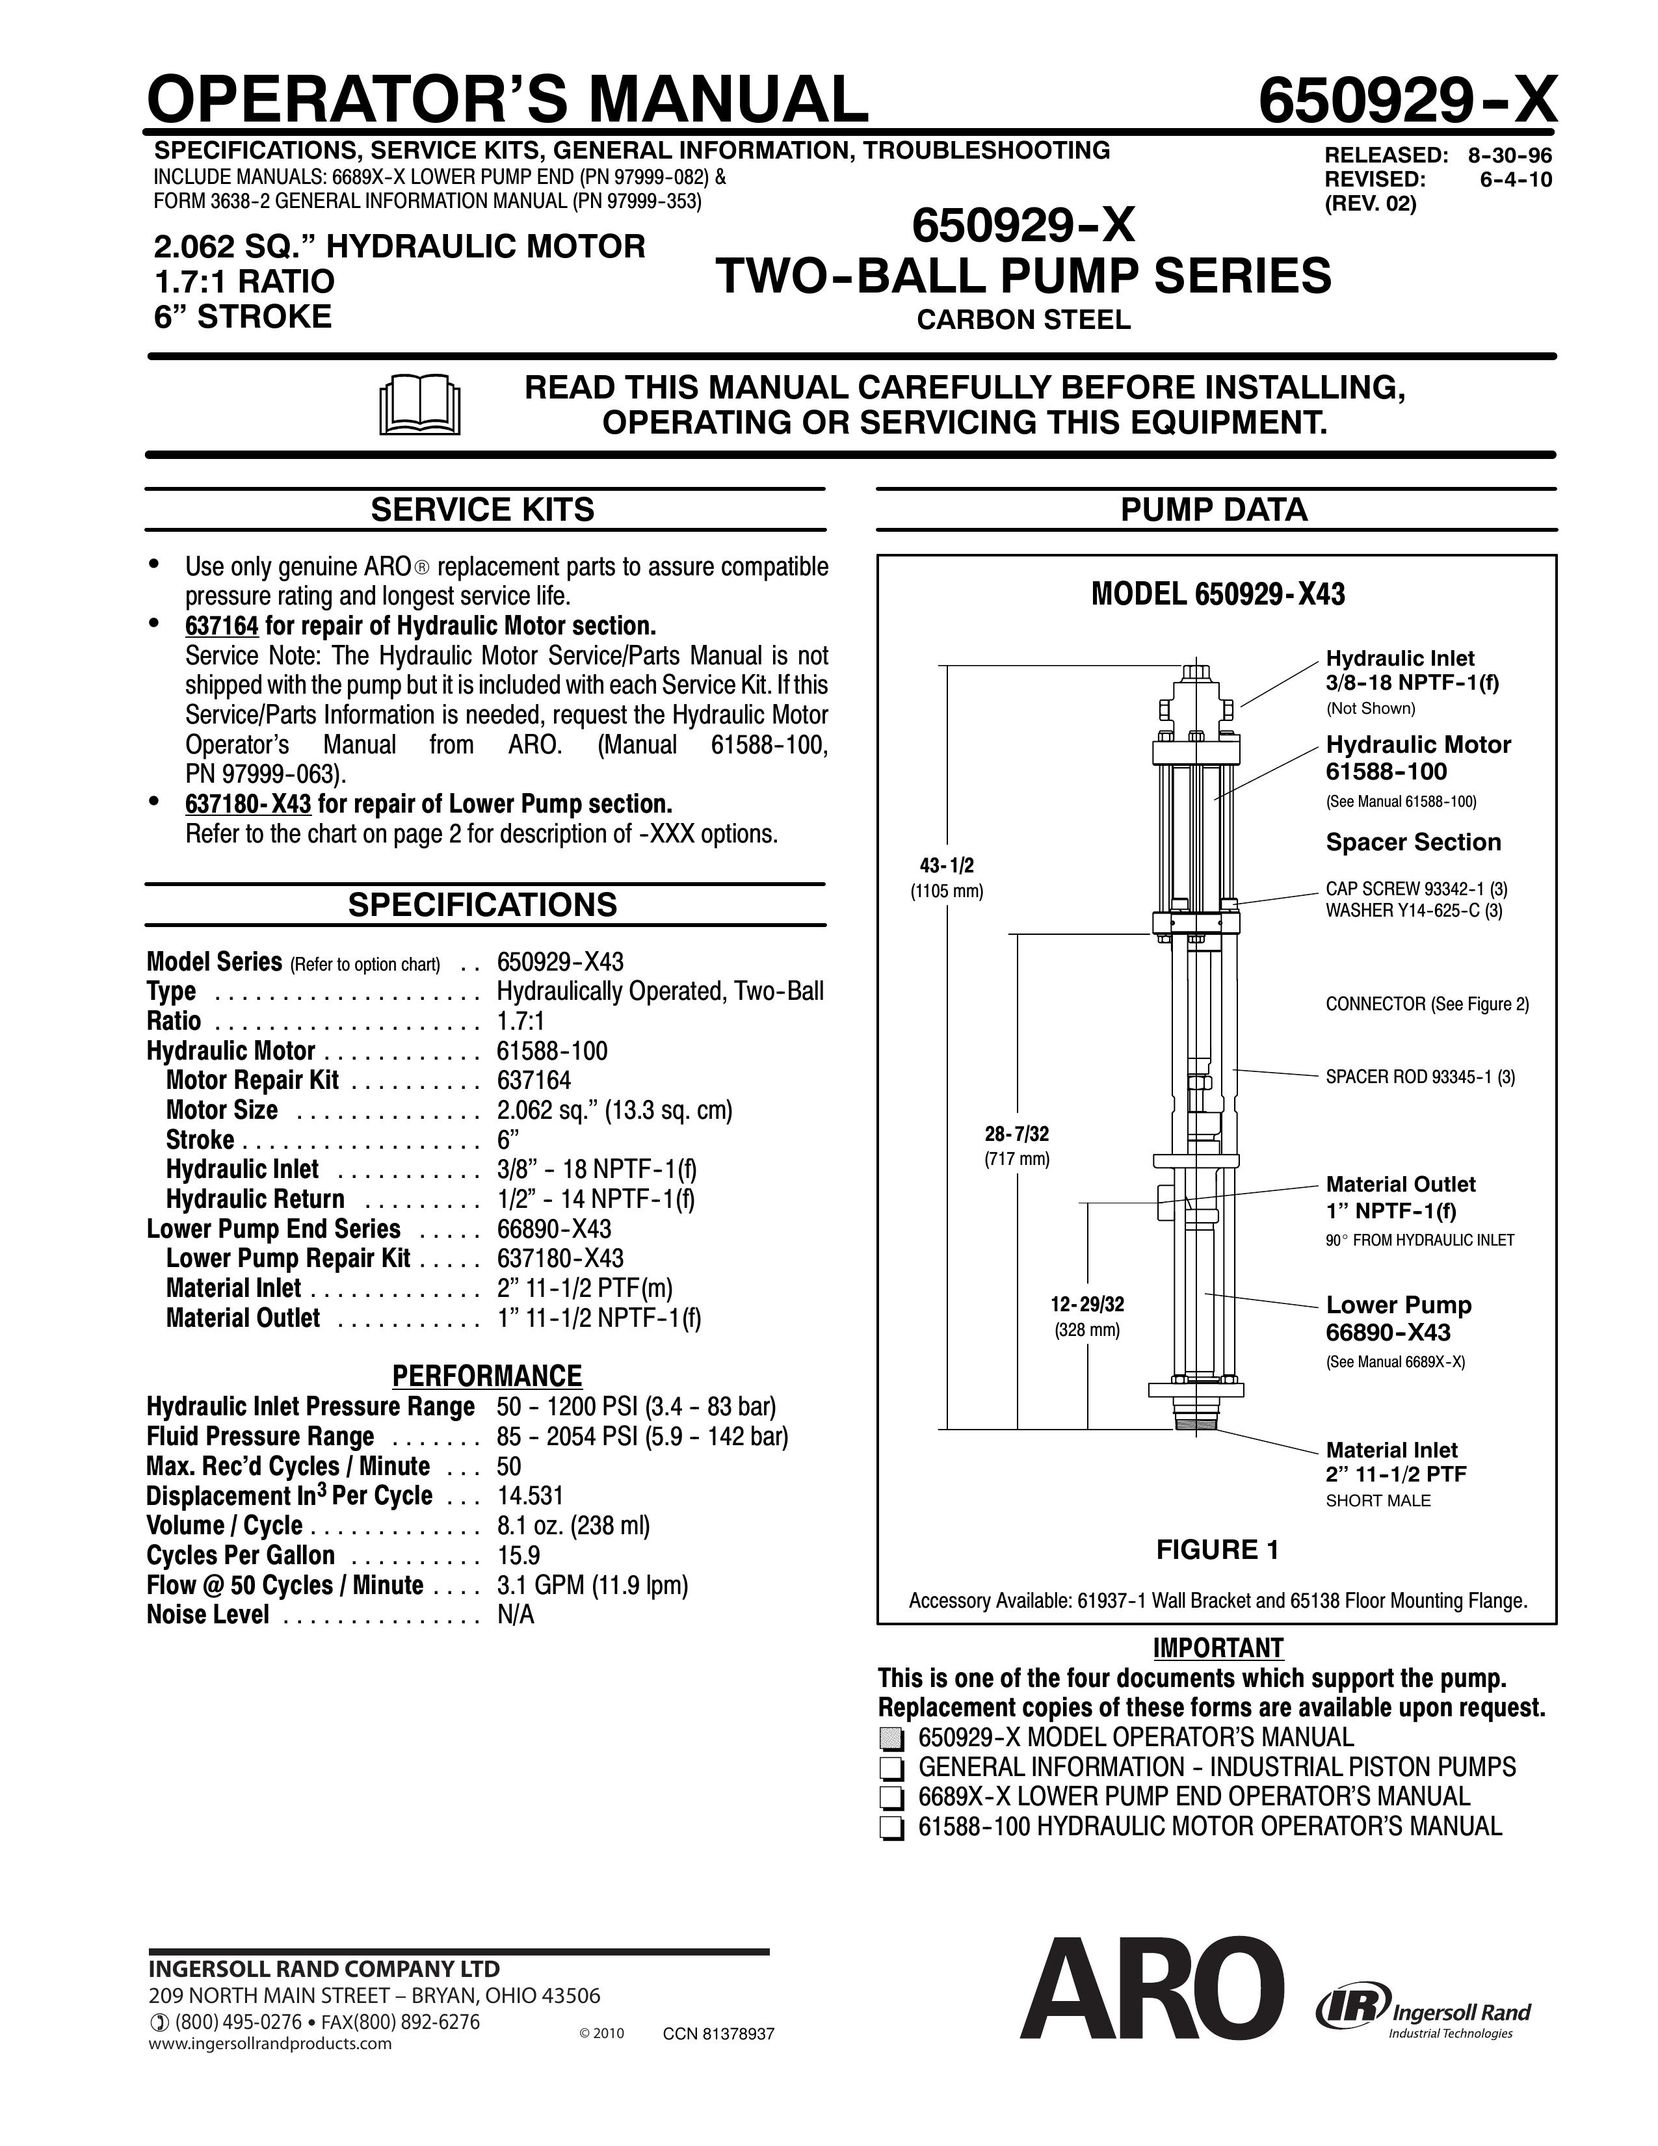 Ingersoll-Rand 650929- -X Heat Pump User Manual